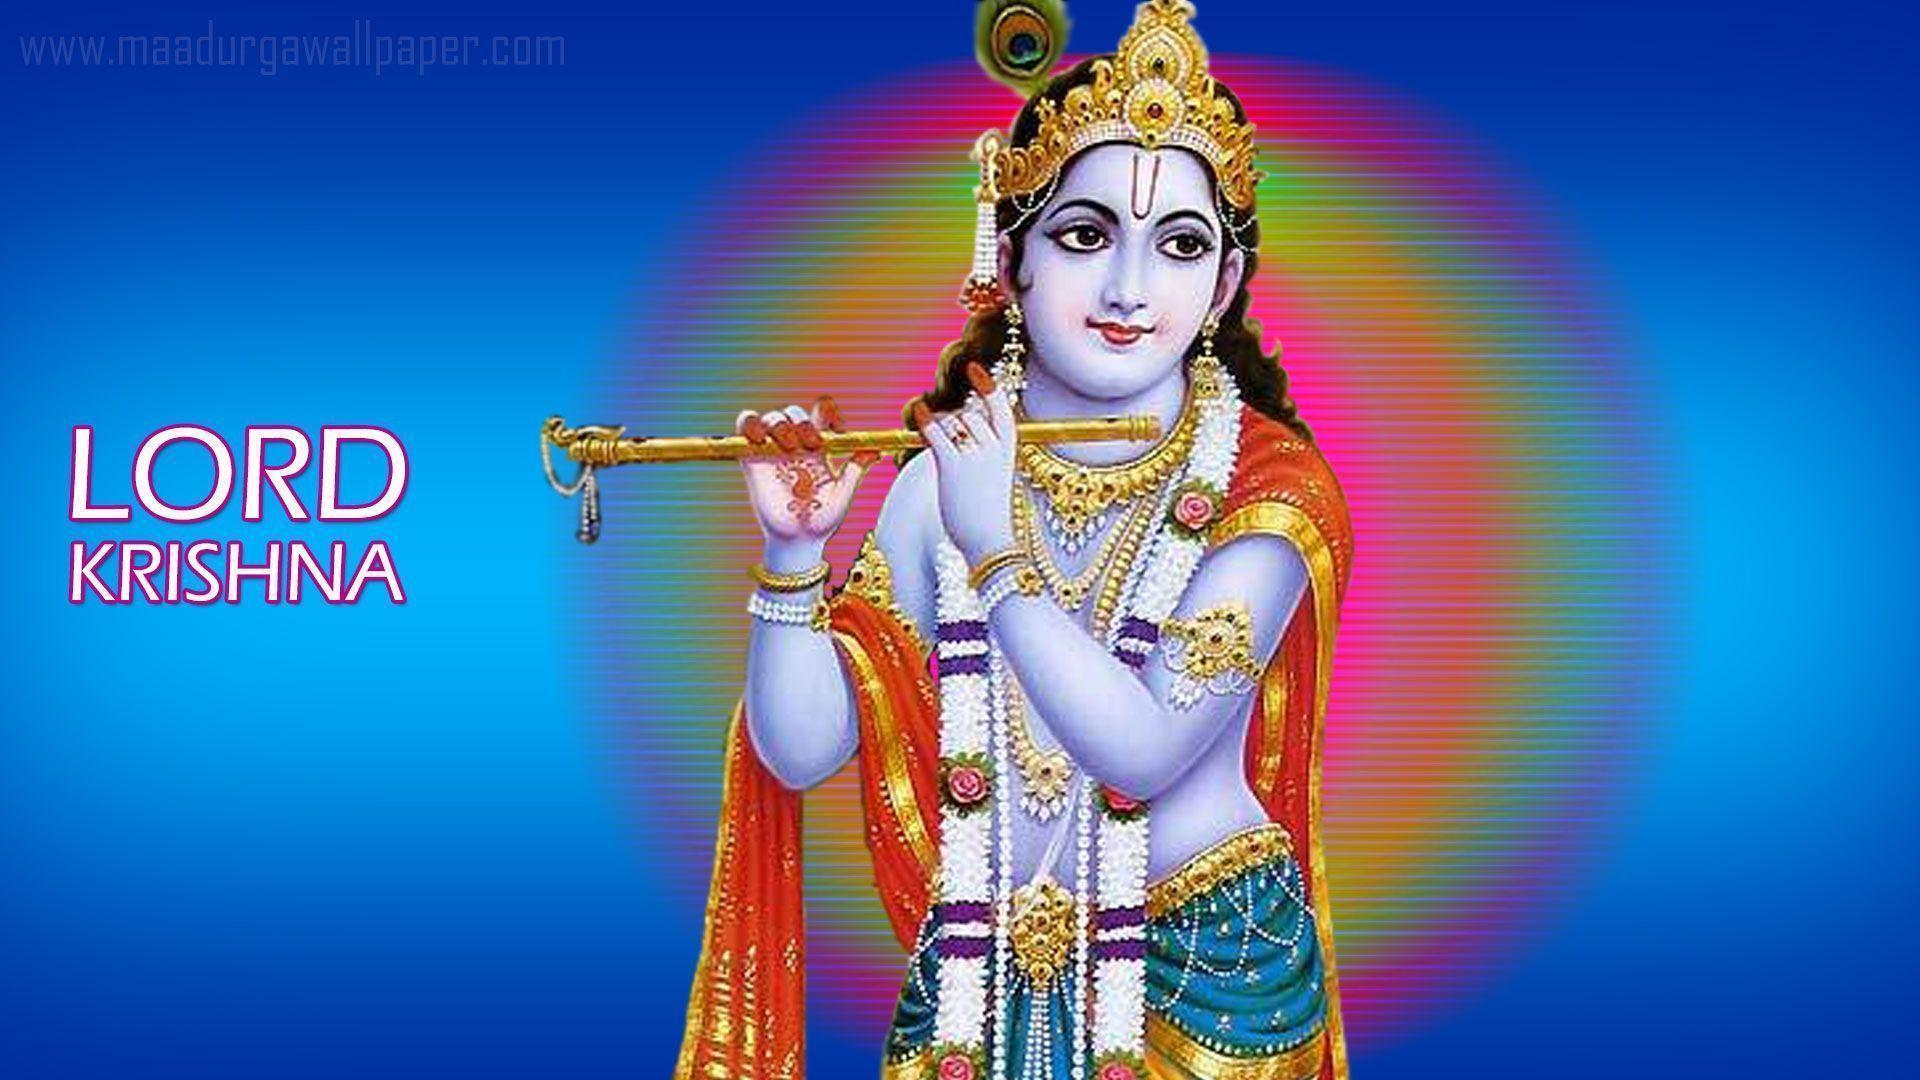 Lord Krishna Wallpaper download free